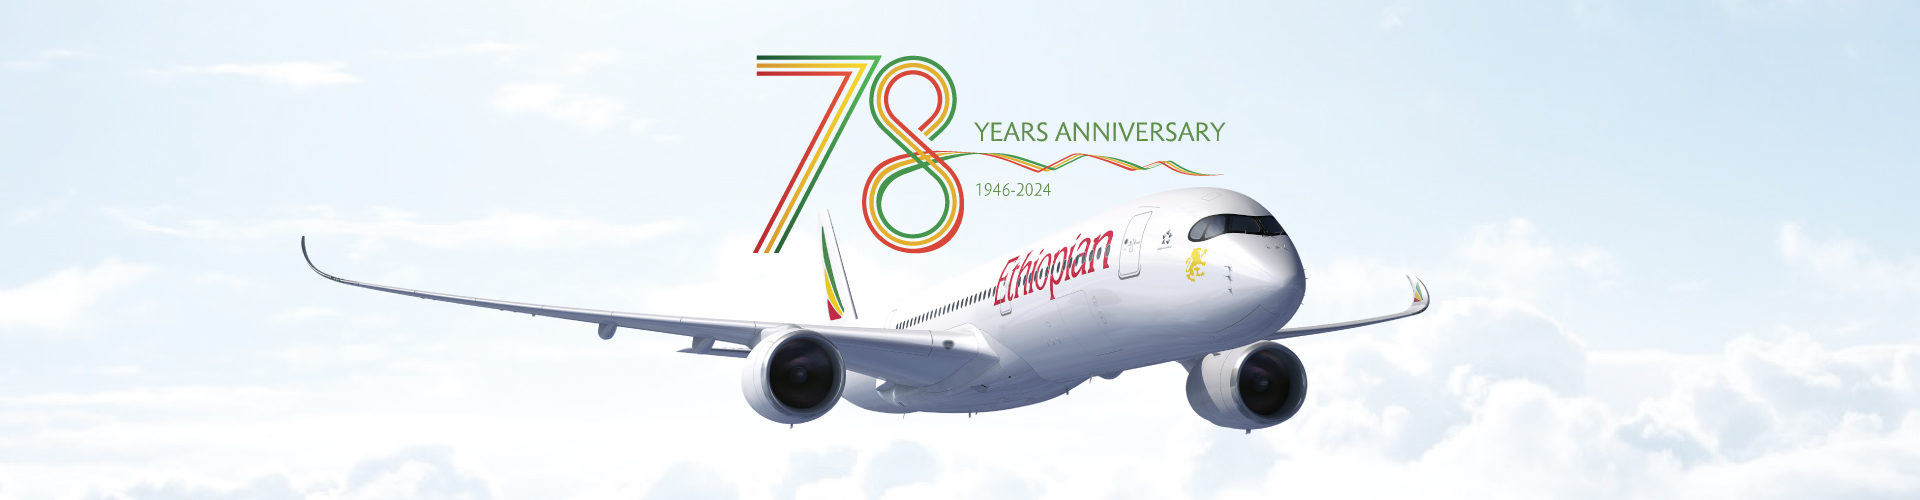 Ethiopian airlines Fleet